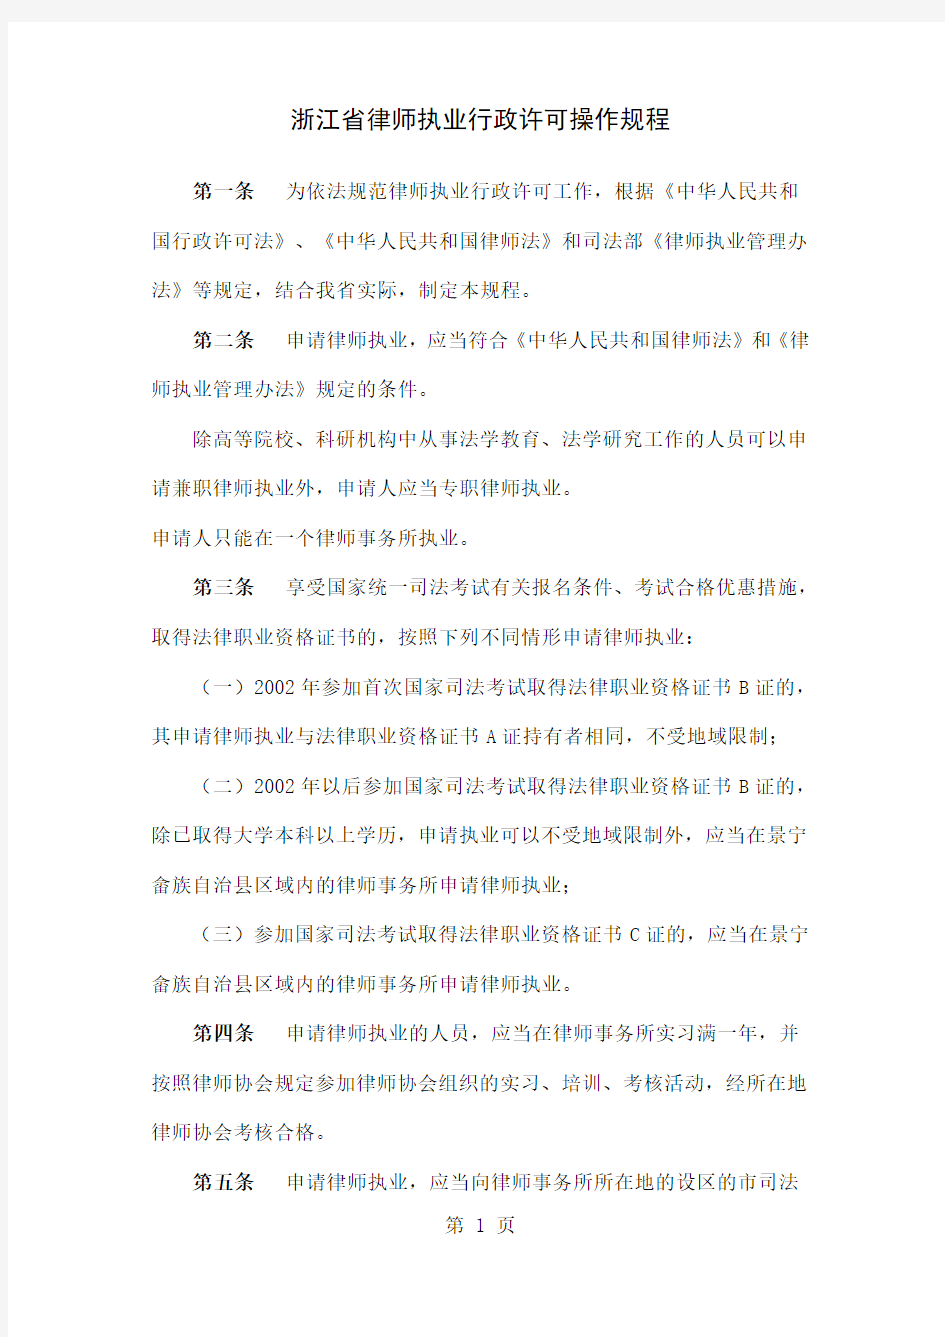 浙江省律师执业行政许可操作规程-21页文档资料